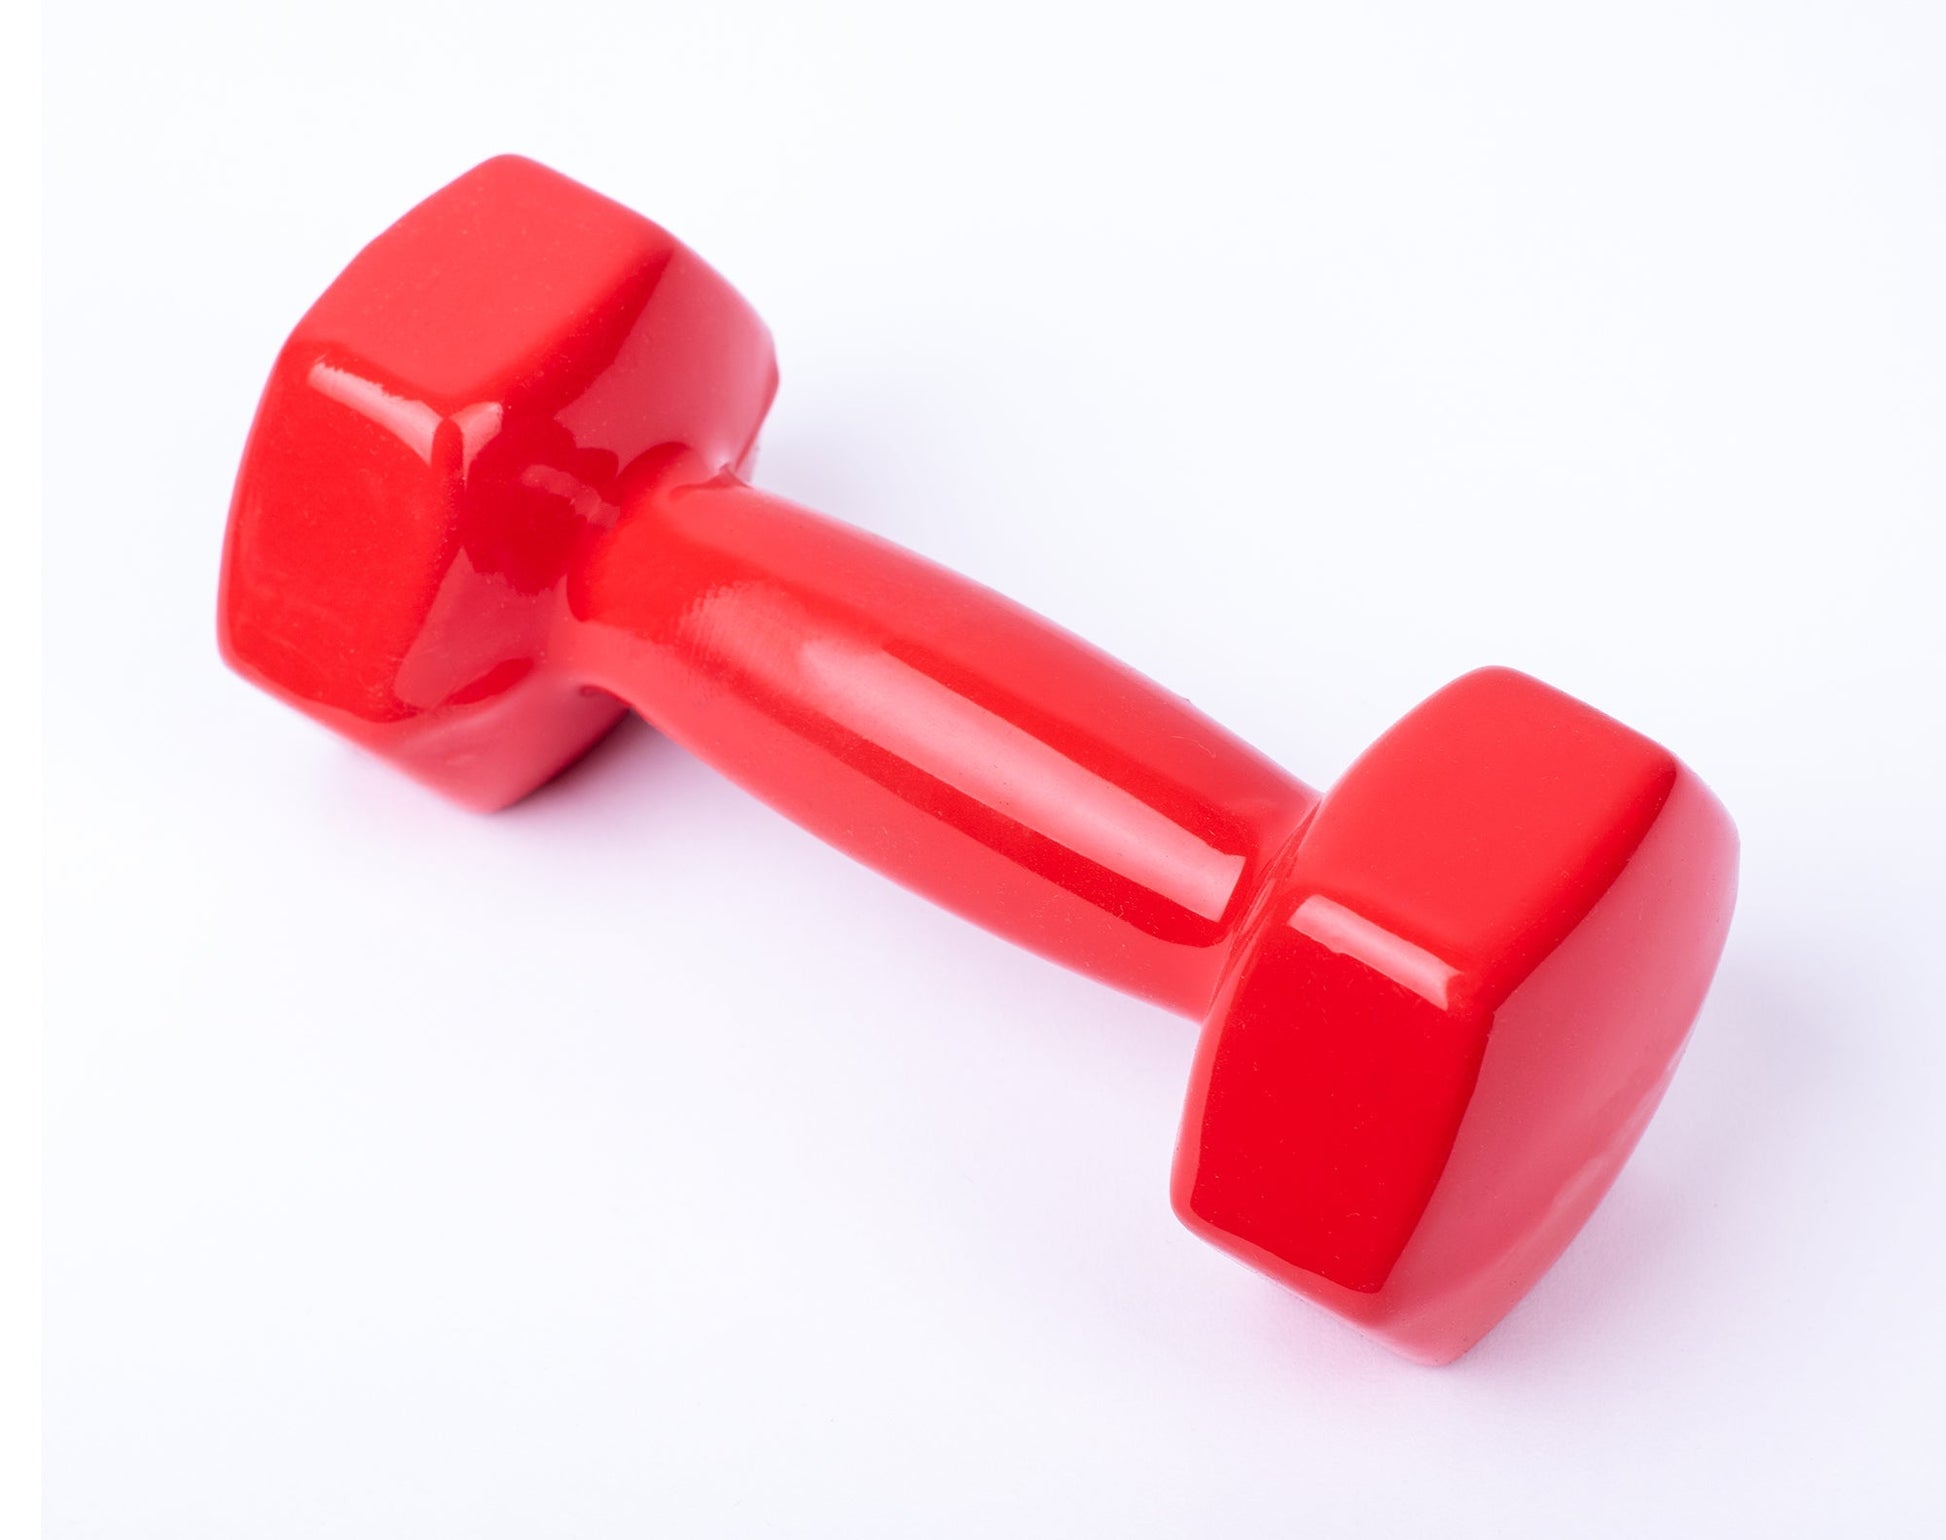 دامبل حديد للتمارين الرياضية بطبقة من الفينيل - لون احمر - قطعة واحدة - وزن 1 كيلو - Kanteen - كانتين